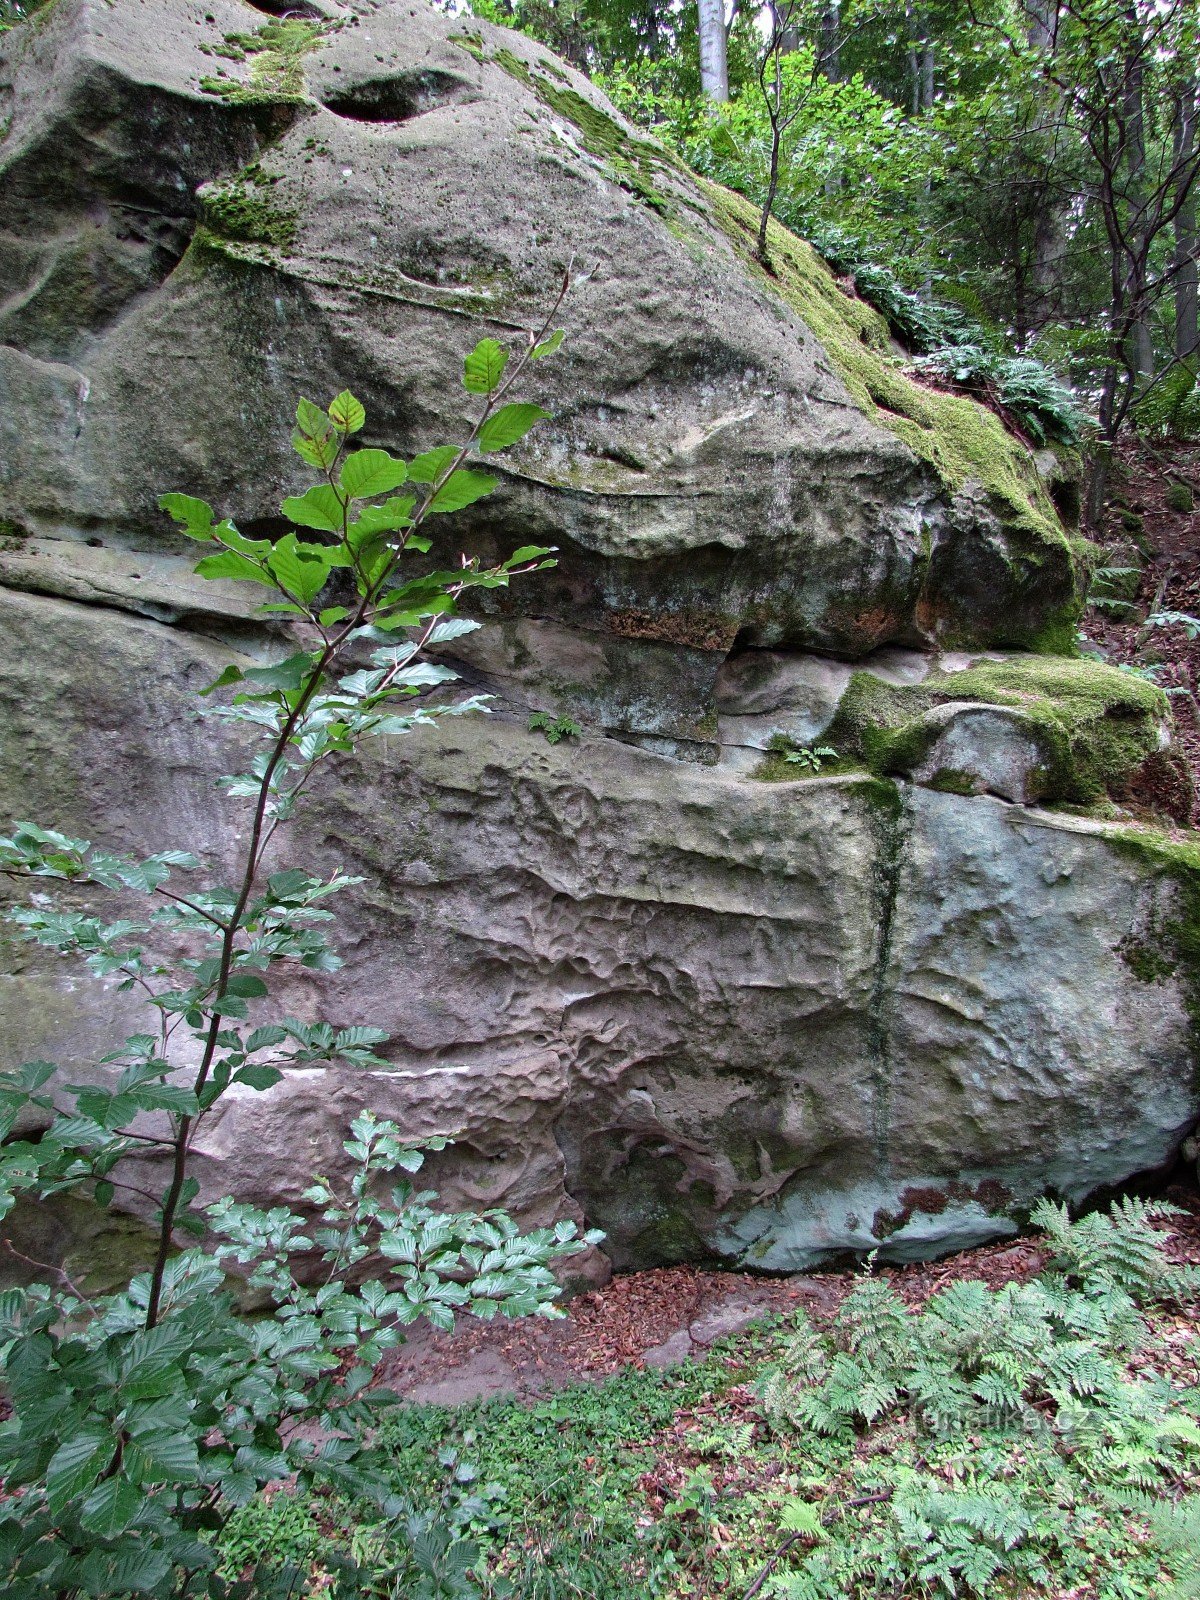 Chřiby - formazioni rocciose nella parte superiore di PP Makovica